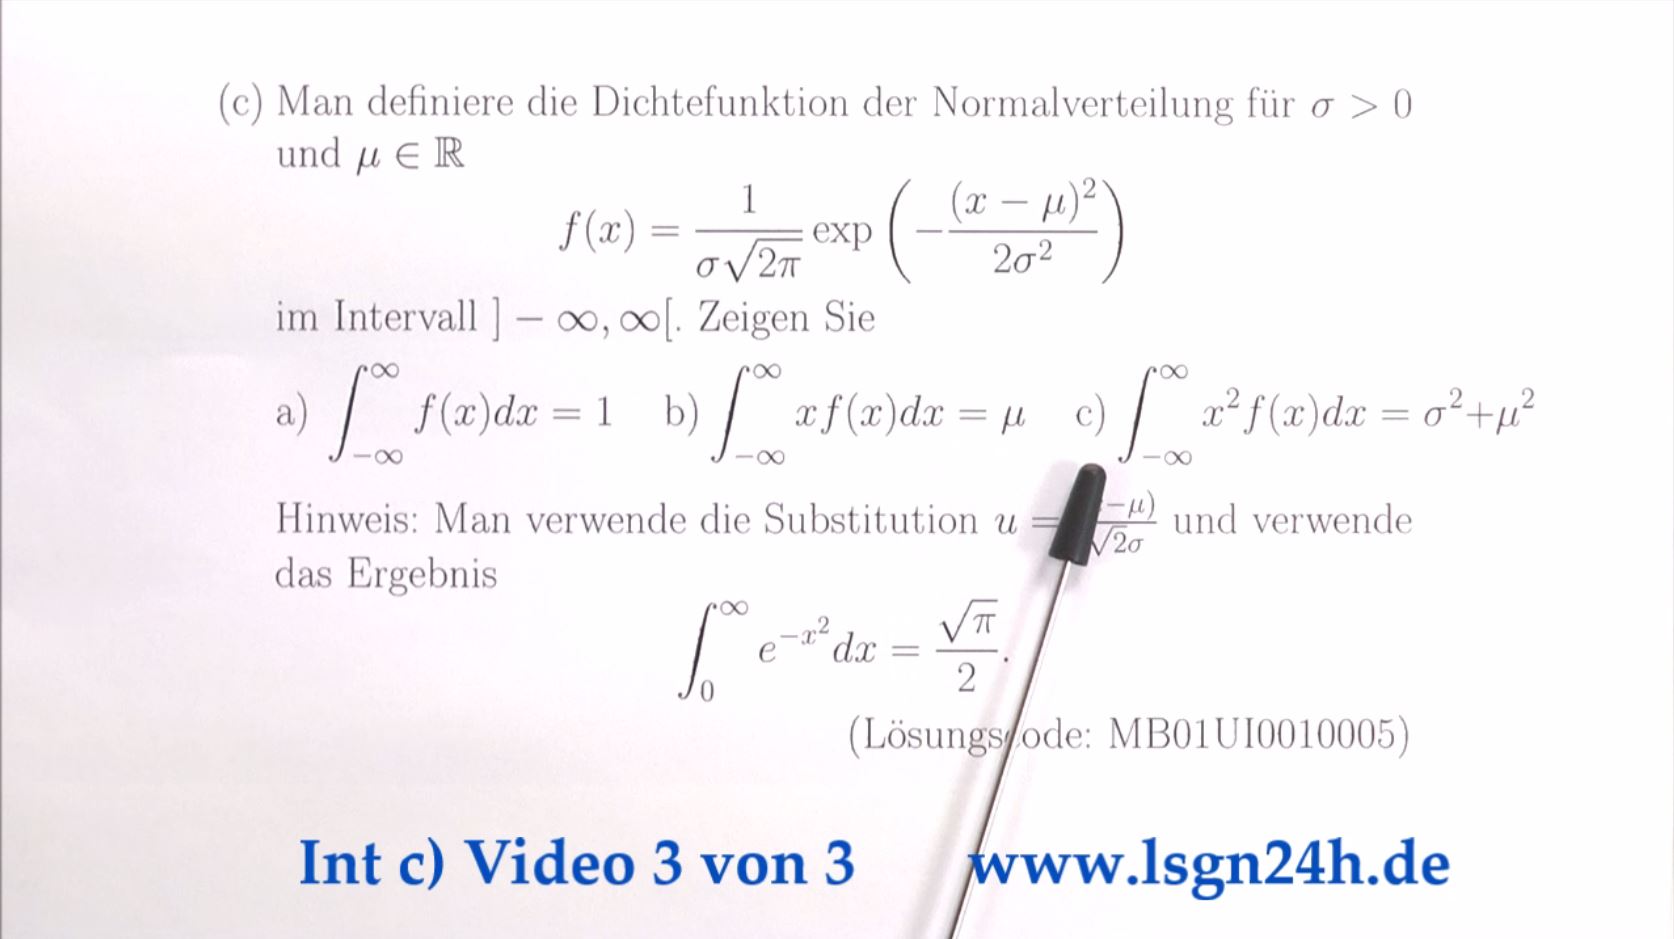 Integral über die Dichtefunktion der Normalverteilung mit Faktor $x^2$  (3 von 3)